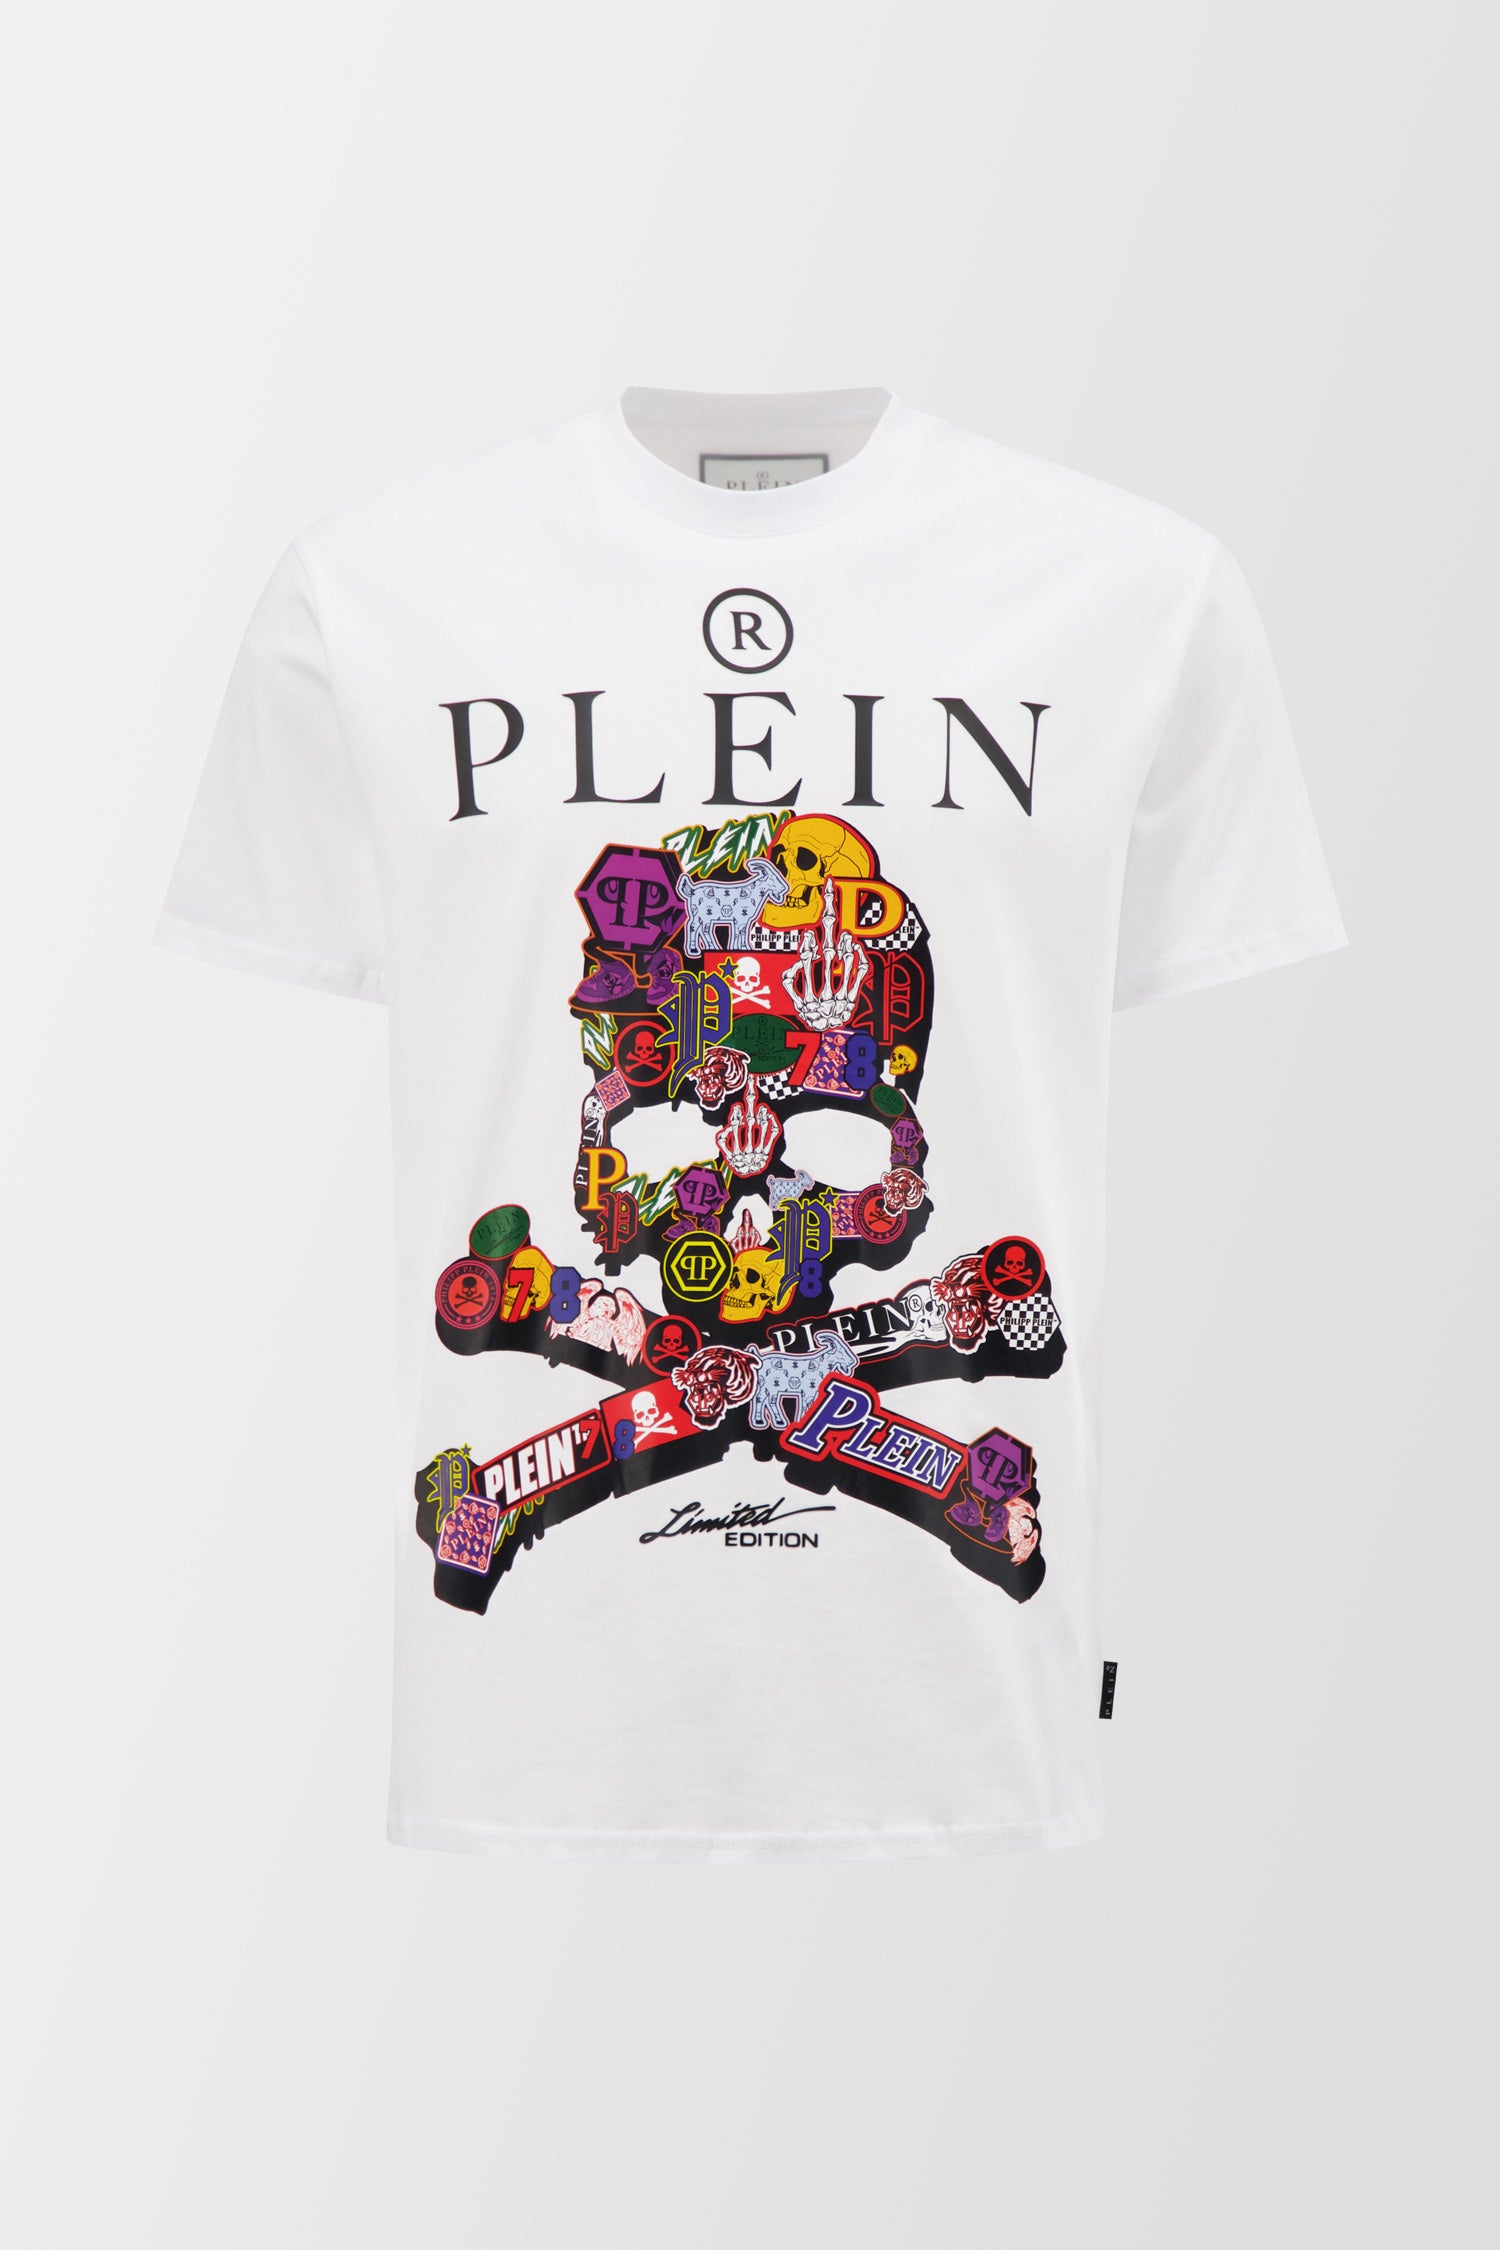 Philipp Plein Men Collection - Original Premium Clothing And Accessories